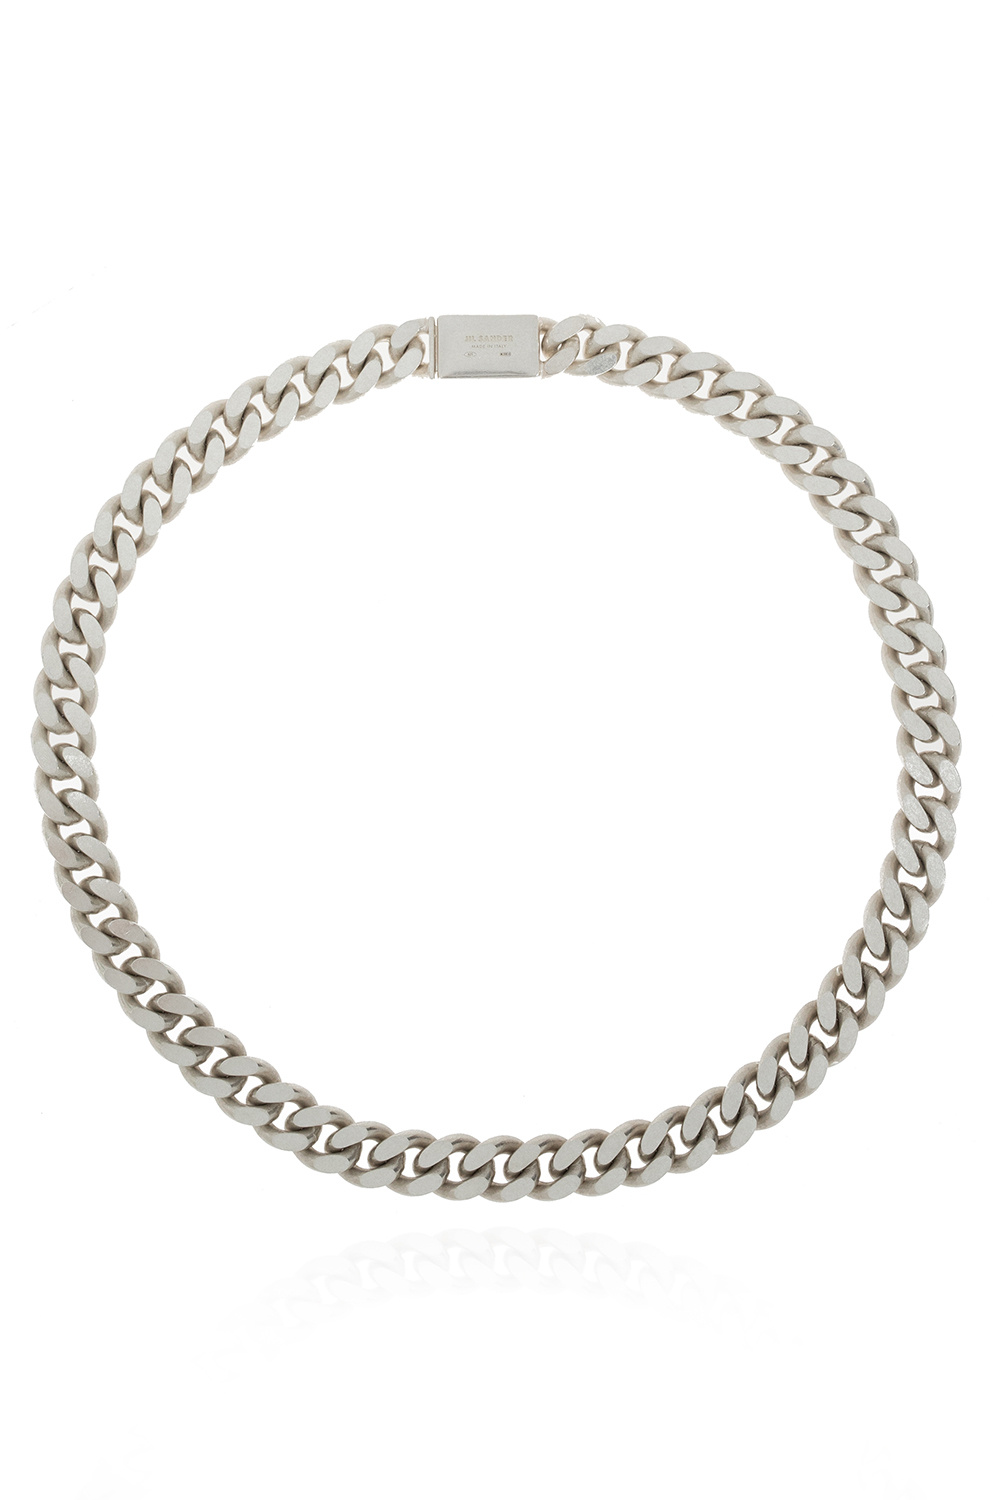 JIL SANDER Silver necklace